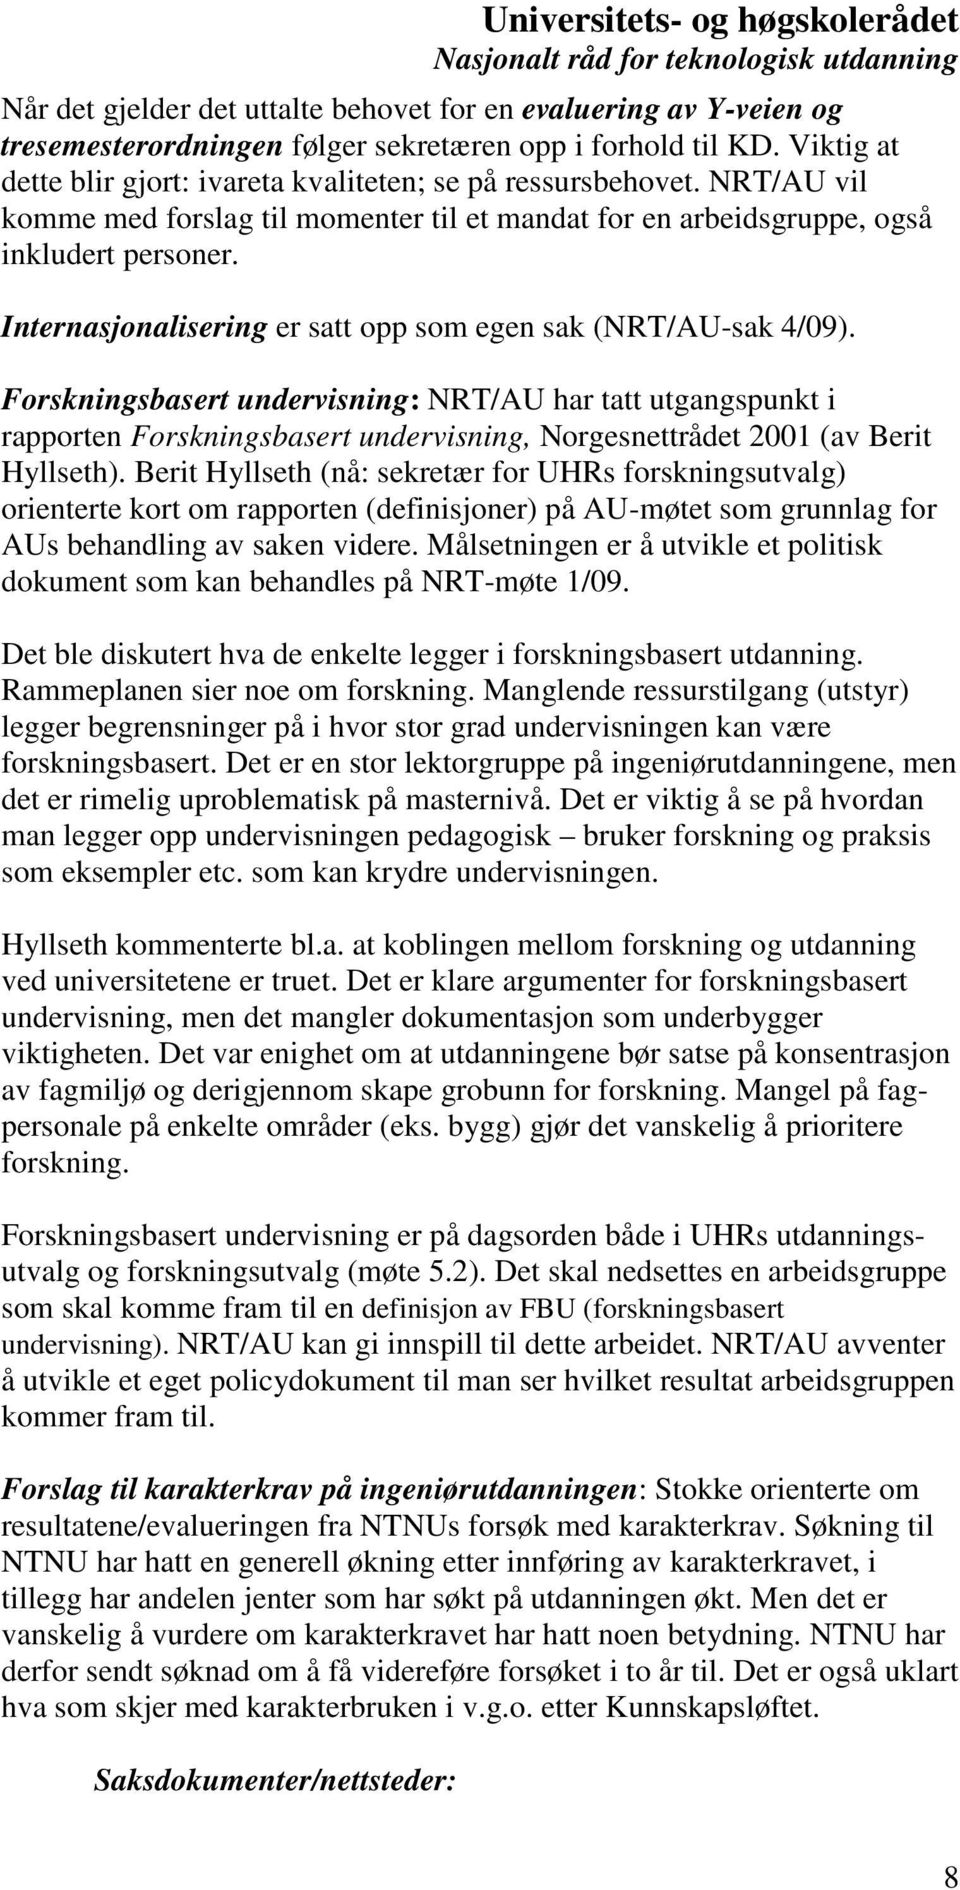 Forskningsbasert undervisning: NRT/AU har tatt utgangspunkt i rapporten Forskningsbasert undervisning, Norgesnettrådet 2001 (av Berit Hyllseth).